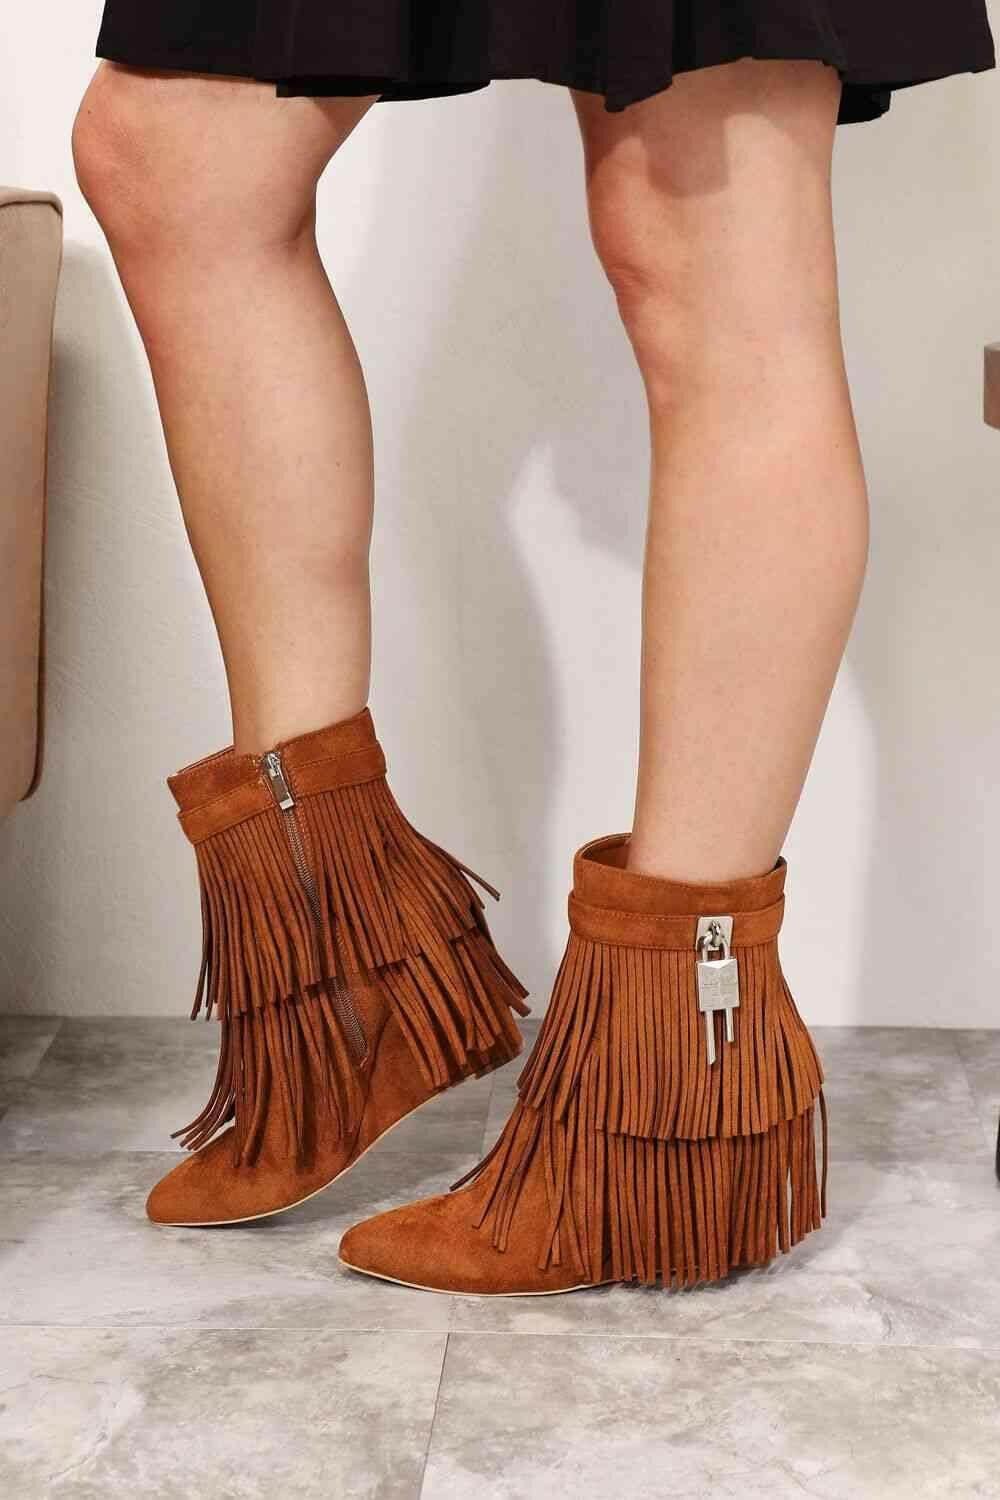 Fashionista Women's Tassel Wedge Heel Booties